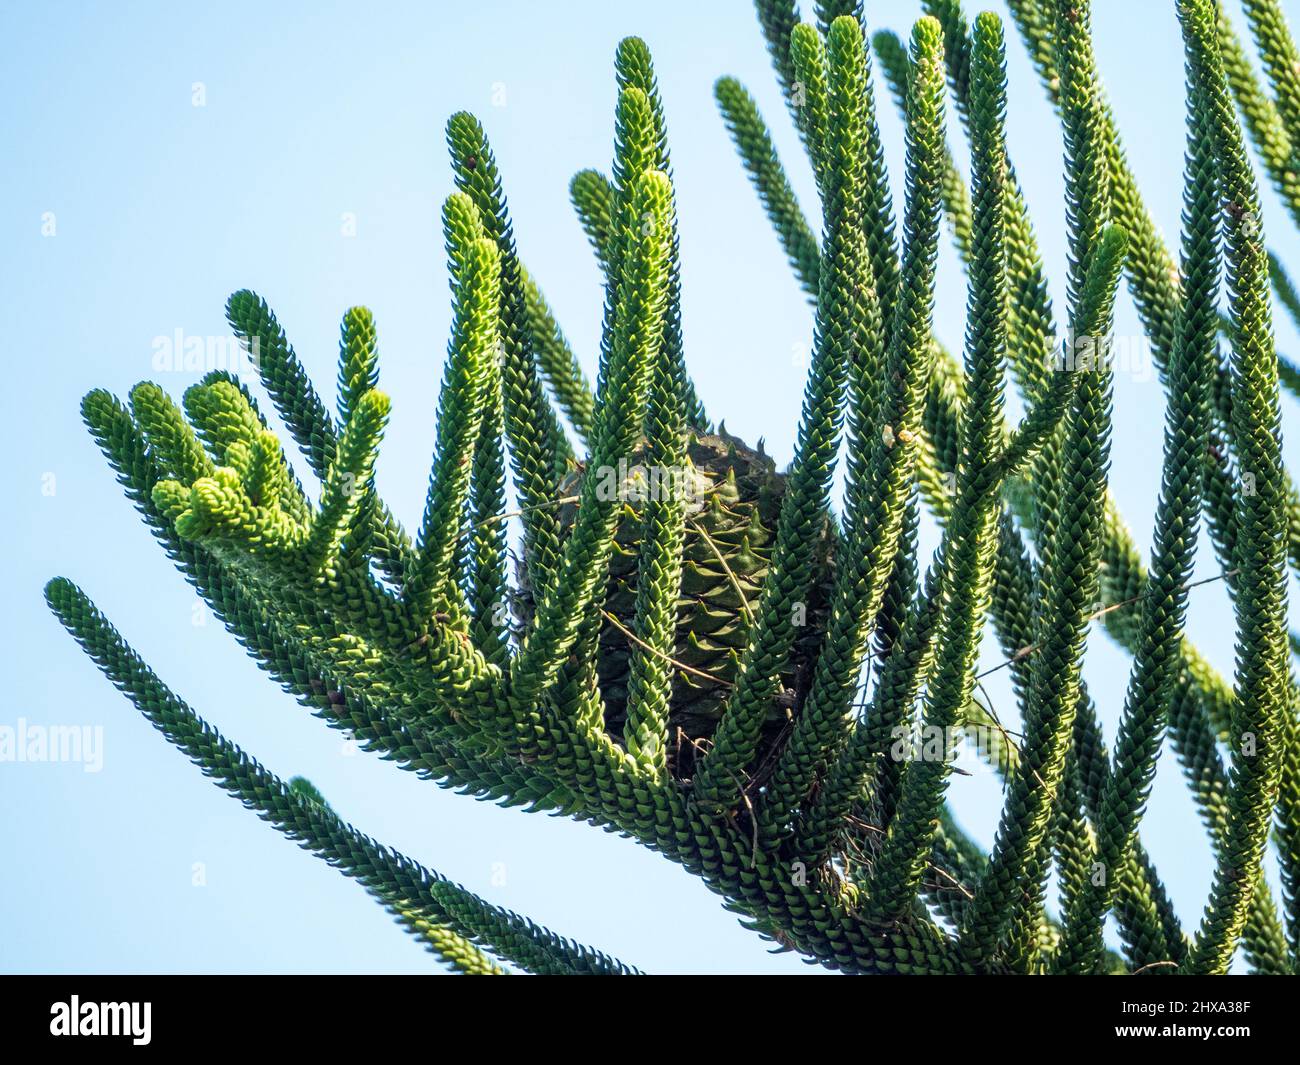 Aiguilles de pin et cône se formant sur un arbre de pin de Norfolk Island, NSW Australie Banque D'Images